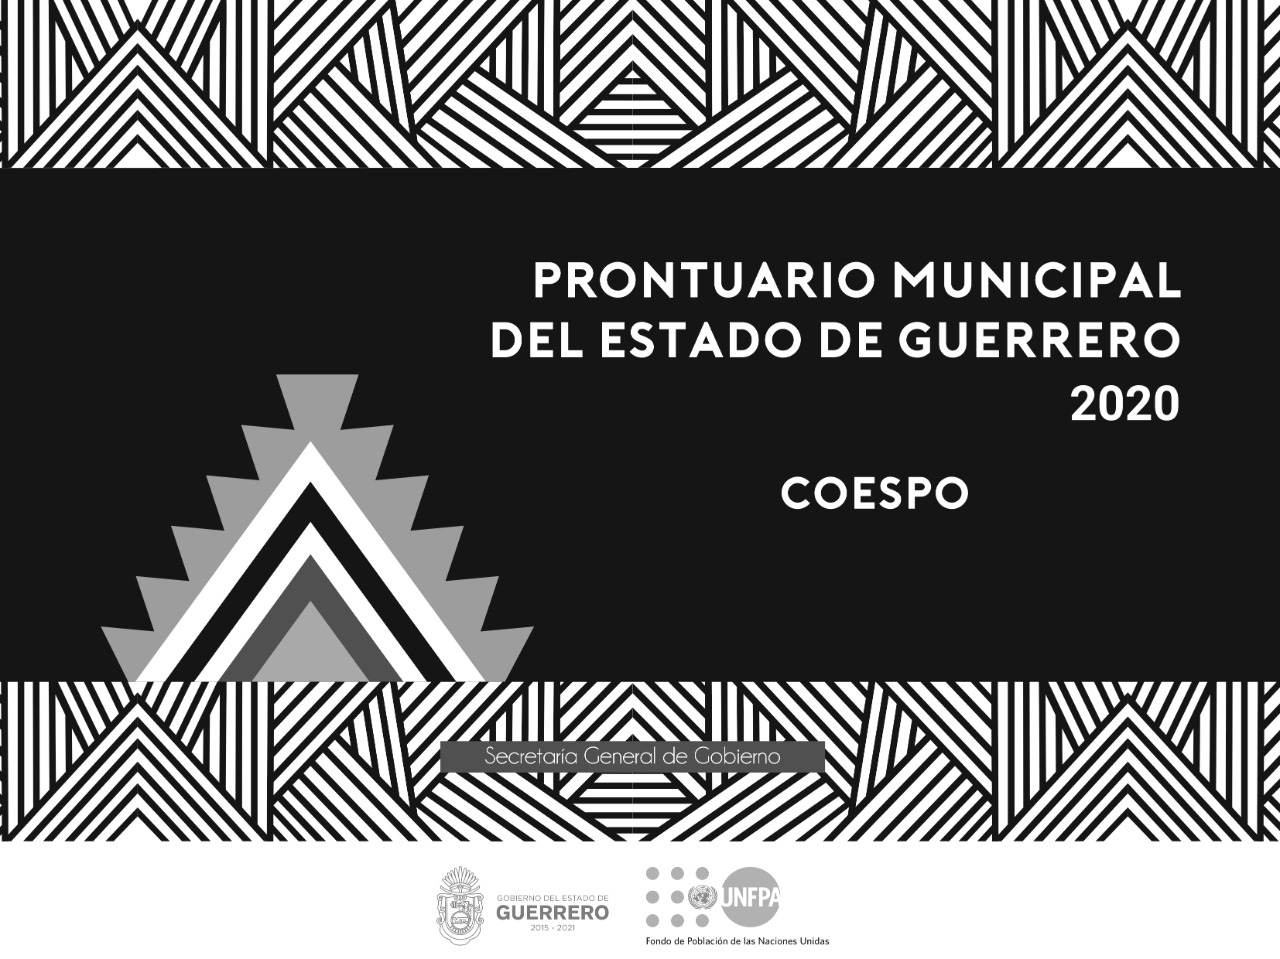 Consulta los datos en el Prontuario Municipal del Estado de Guerrero